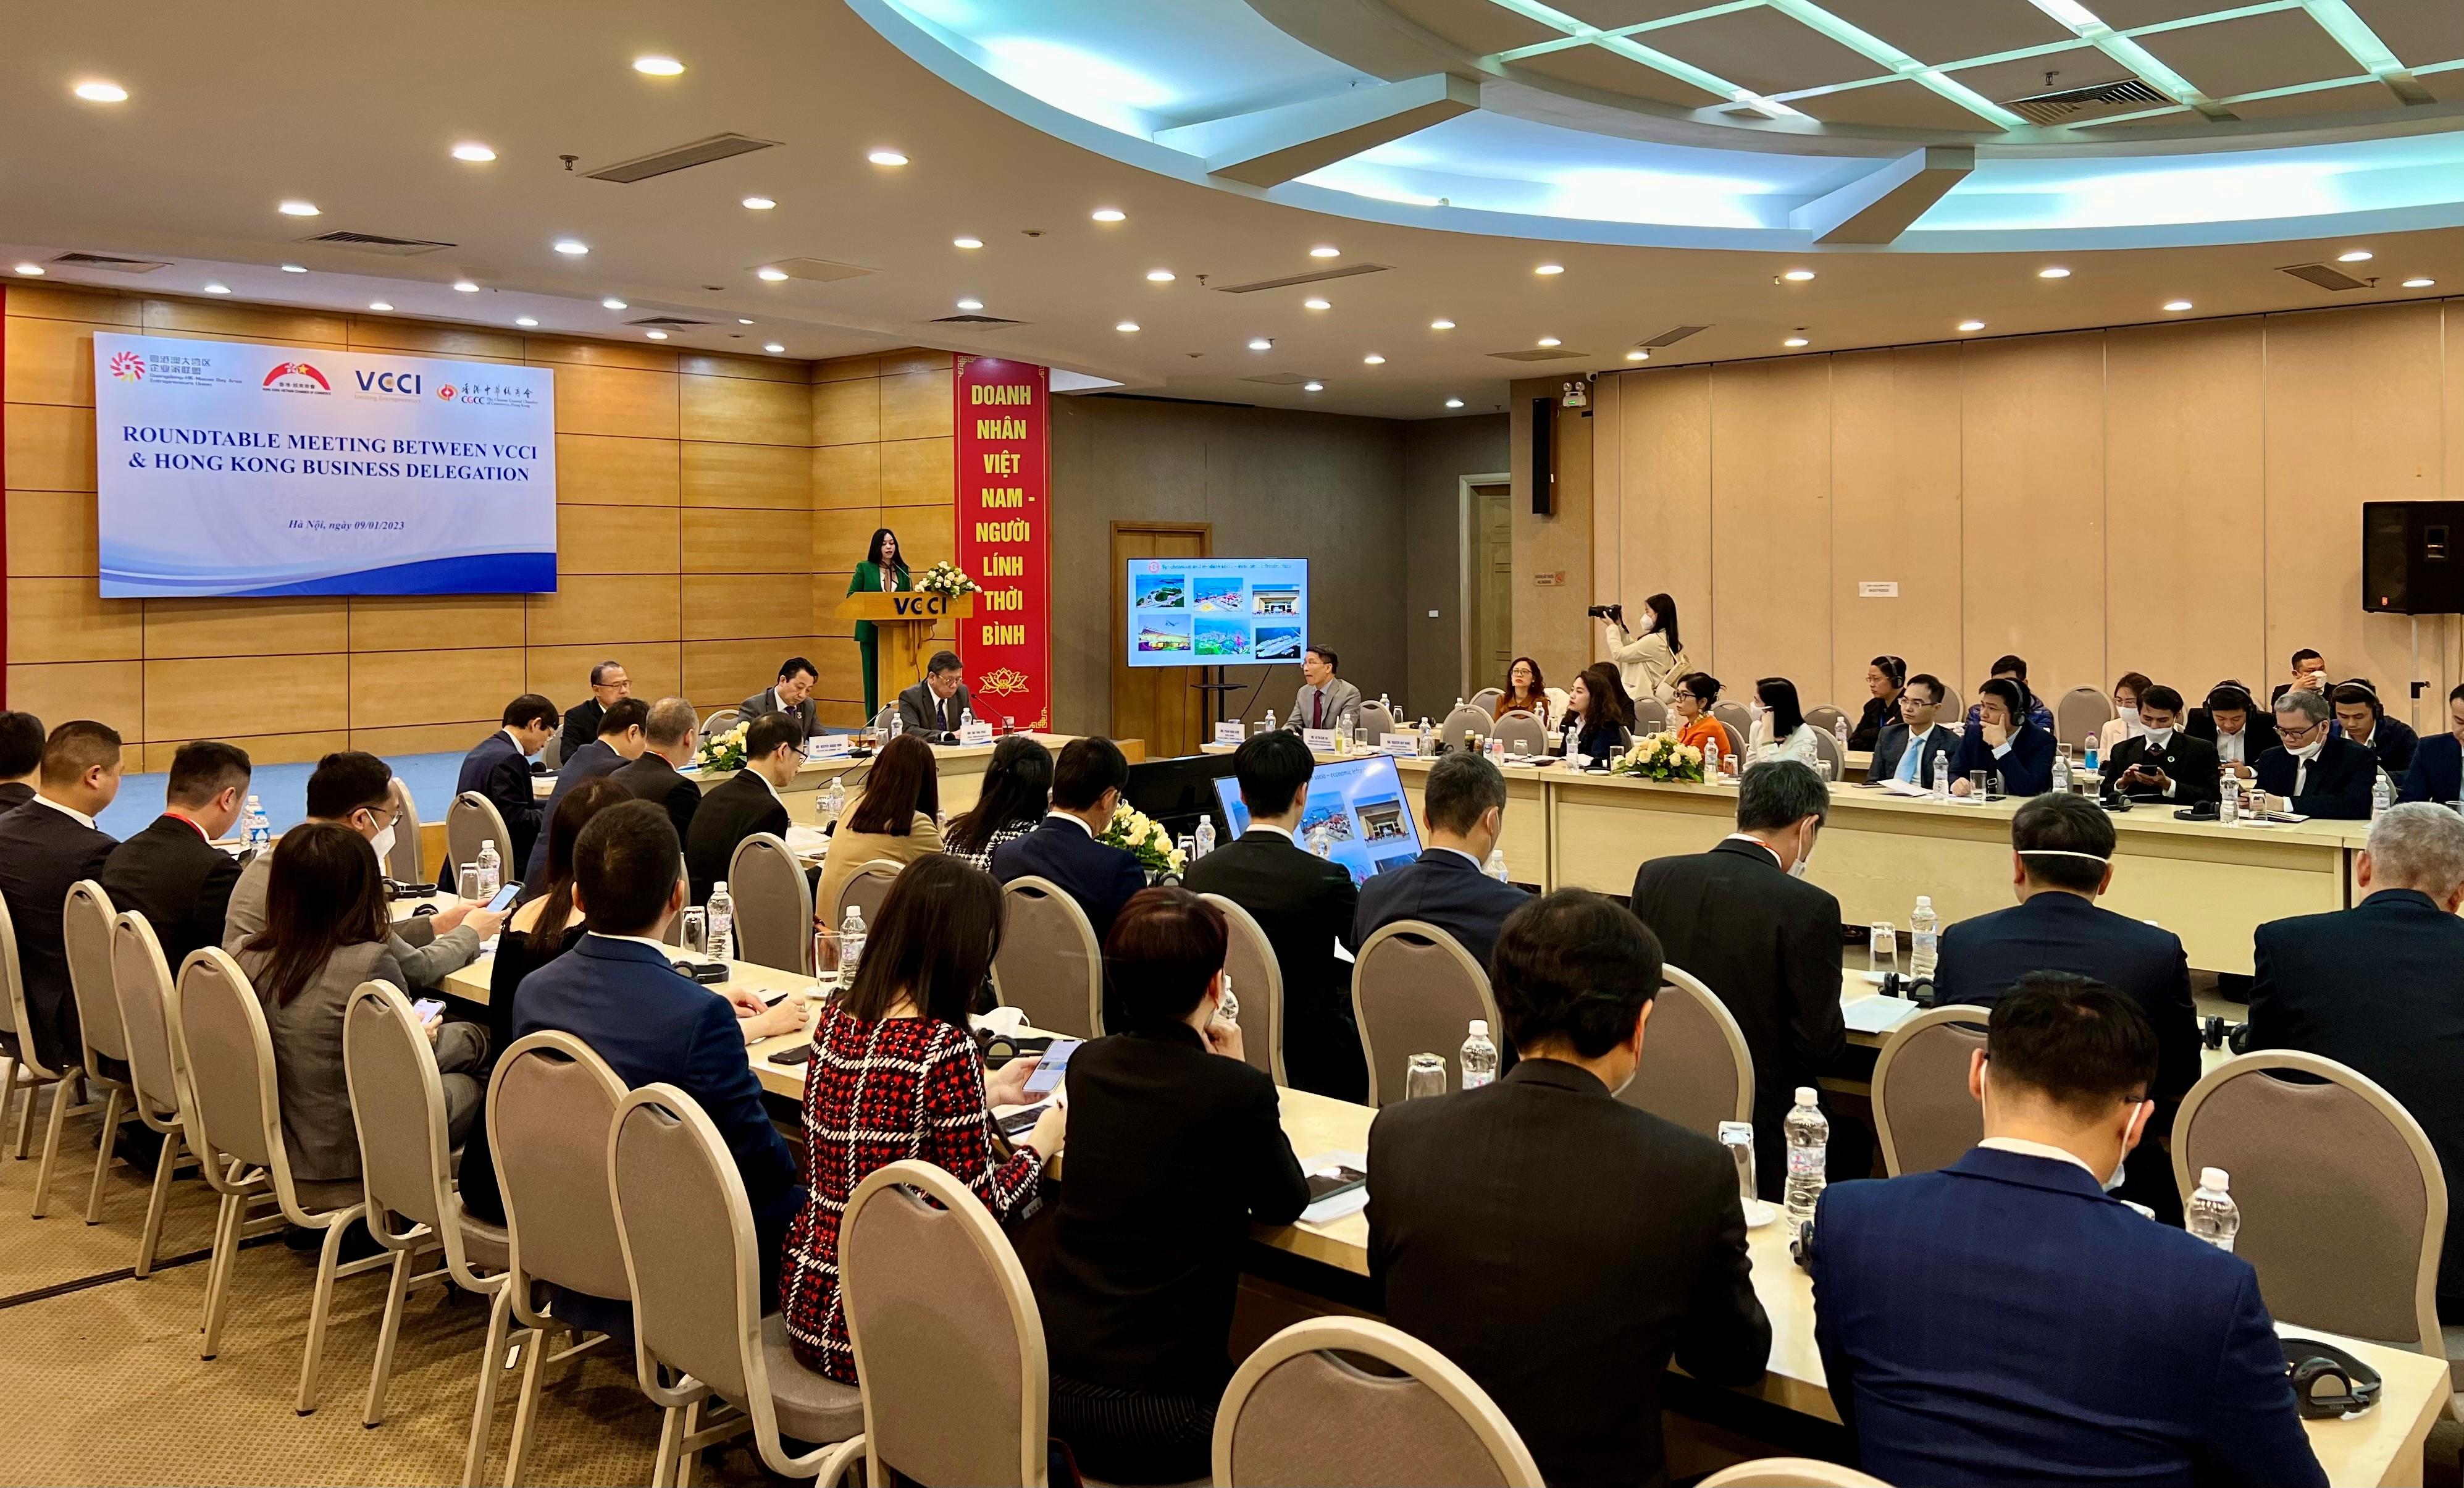 商務及經濟發展局局長丘應樺今日（一月九日）在越南河內與越南工商總會成員會面，推廣香港的營商優勢和投資機遇。由多個香港商會組織的香港商貿代表團成員亦有出席會議。